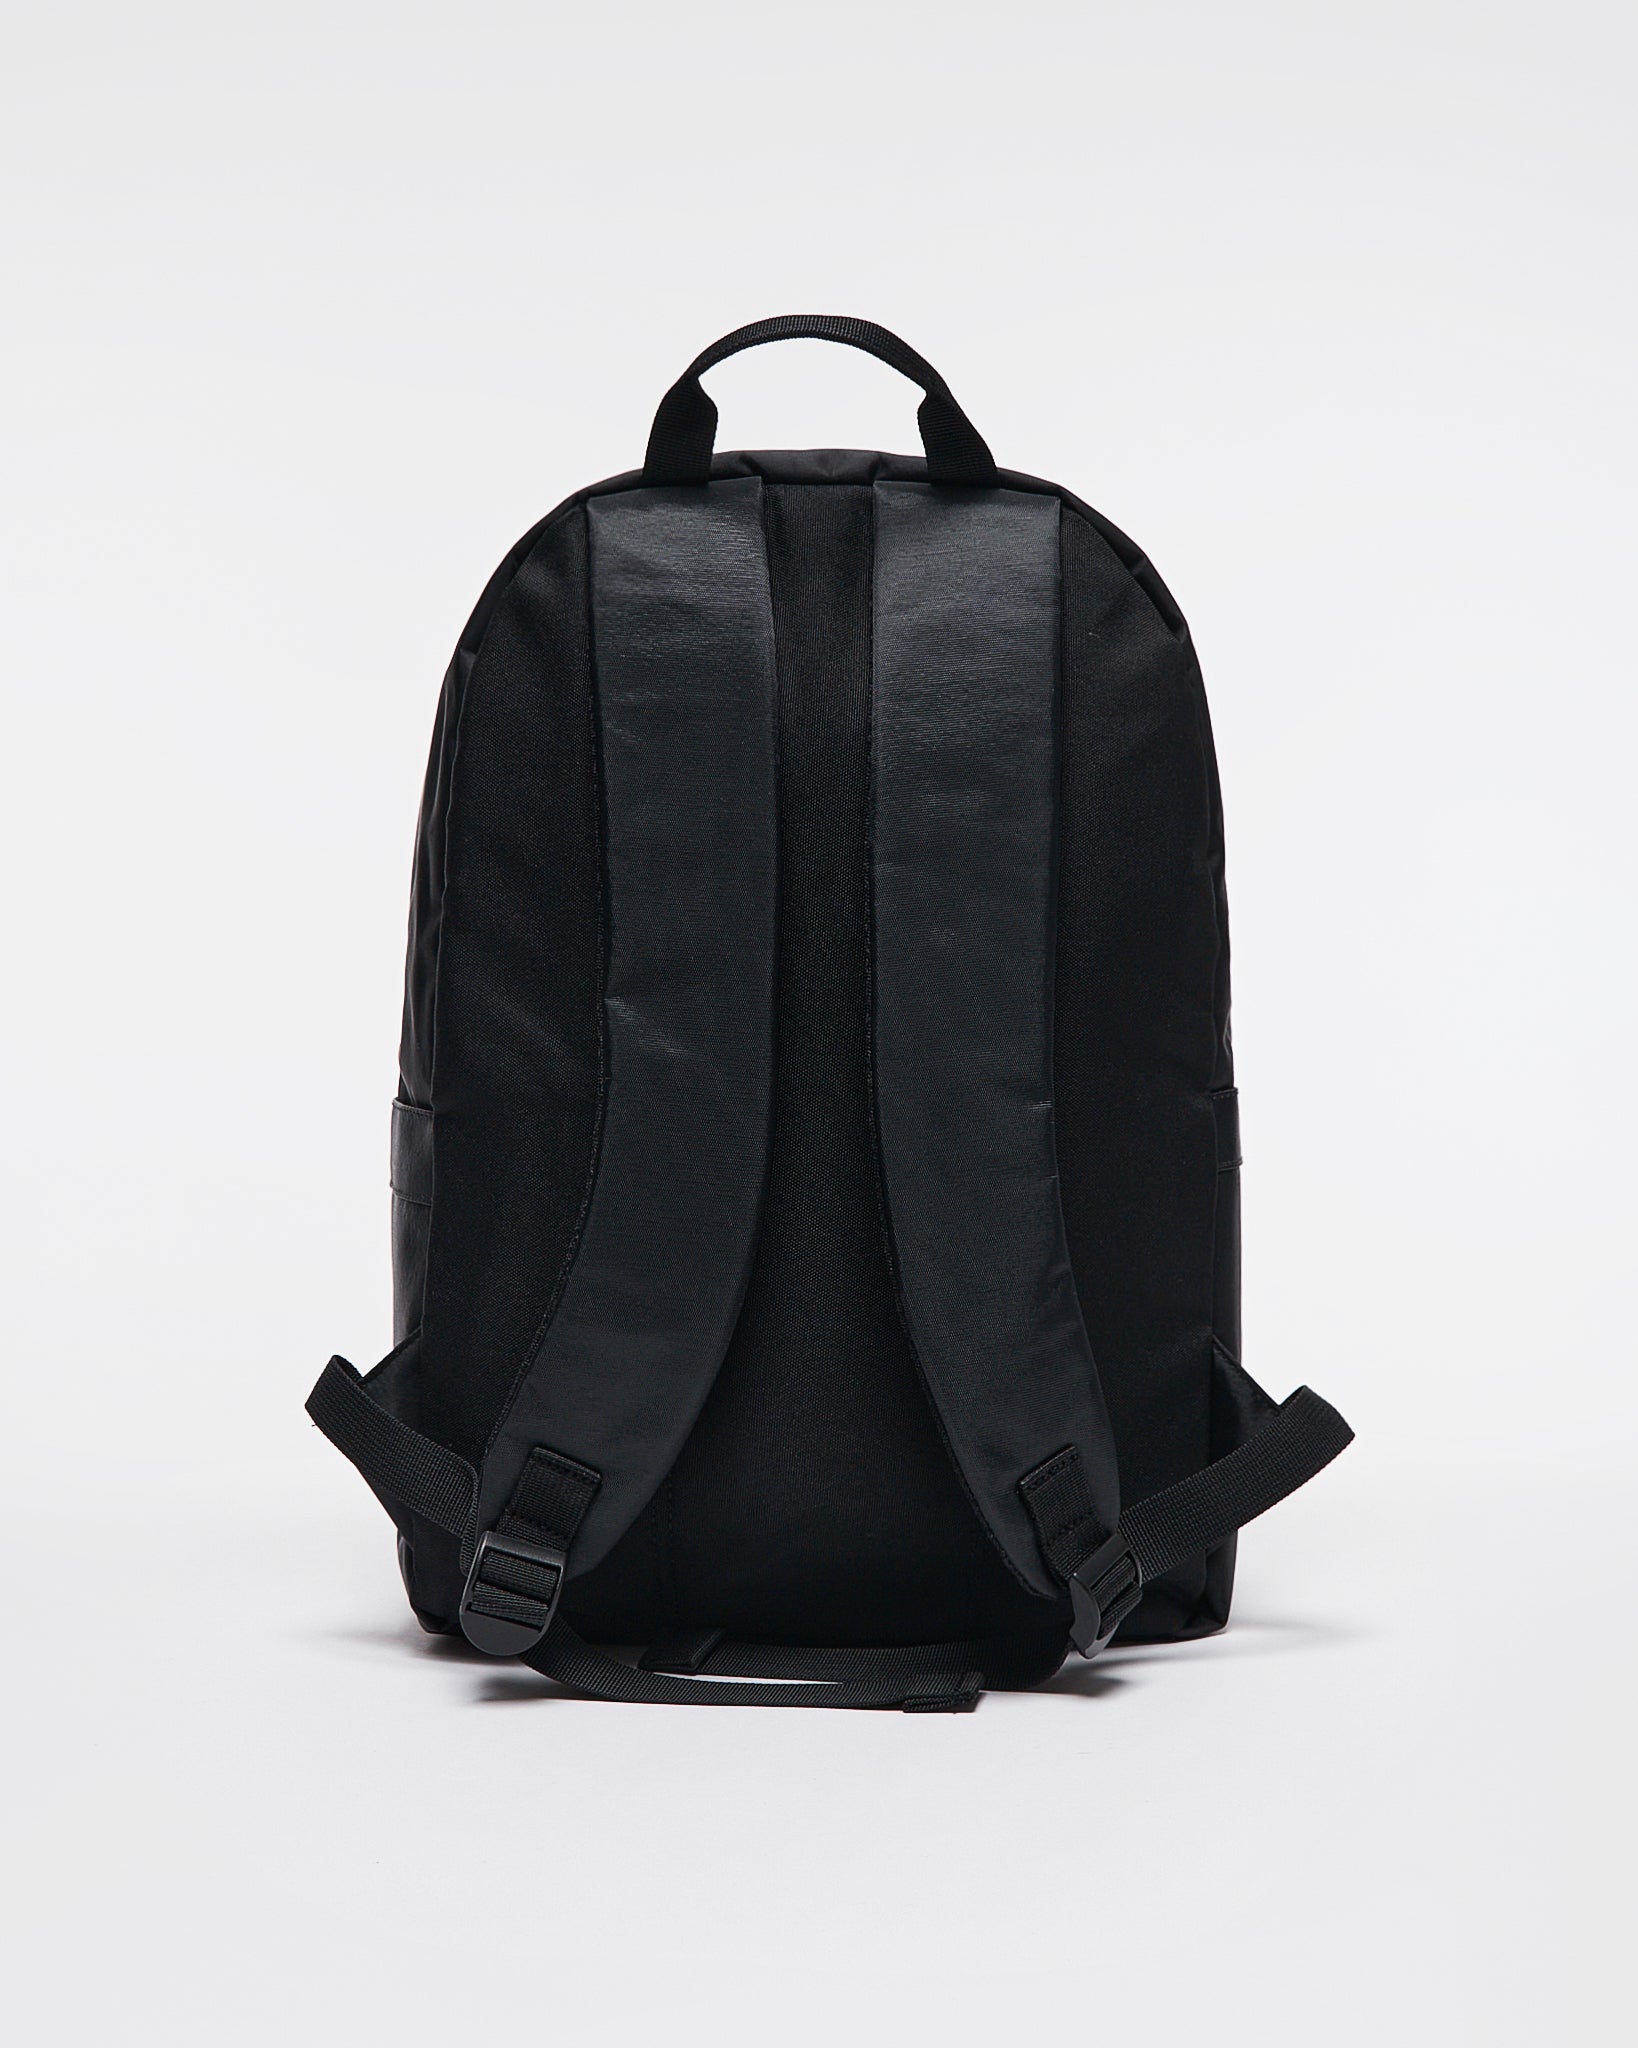 NY Black  Backpack 19.90